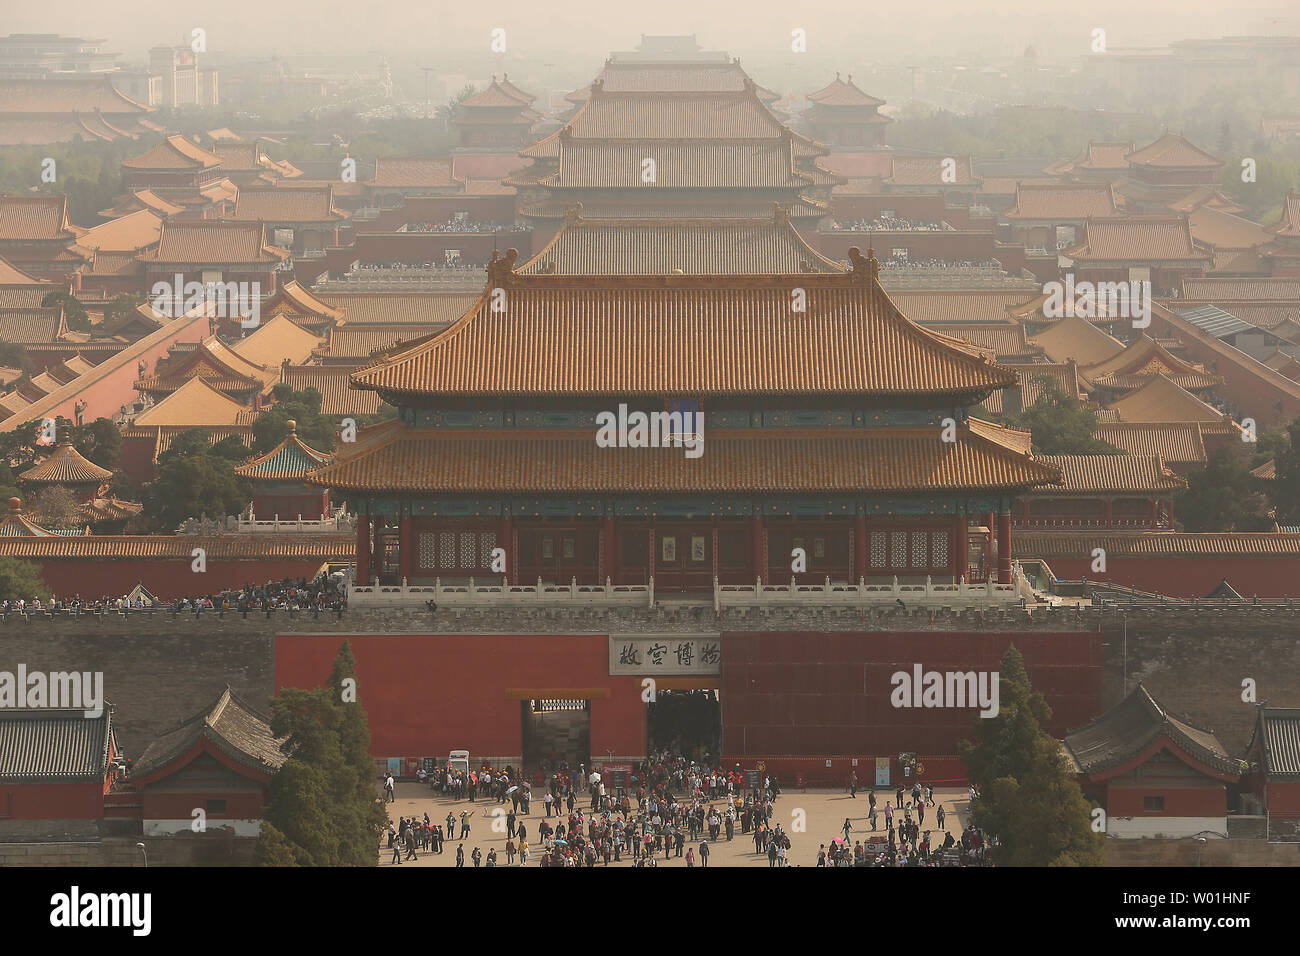 Eine ungesunde Haze sitzt über die Verbotene Stadt, wie Hunderte von Touristen die historischen Palast in Peking besuchen Sie am 17. April 2019. Smog erstickt, plagen die meisten chinesischen Städte vor kurzem in Chinas Hauptstadt aufgrund der strengen Vorschriften zur Eindämmung der Luftverschmutzung verringert hat, dennoch bleibt ein ernstes Problem in der Woche. Die Luftverschmutzung ist teilweise Schuld an der Tourismus in Peking. Foto von Stephen Rasierer/UPI Stockfoto